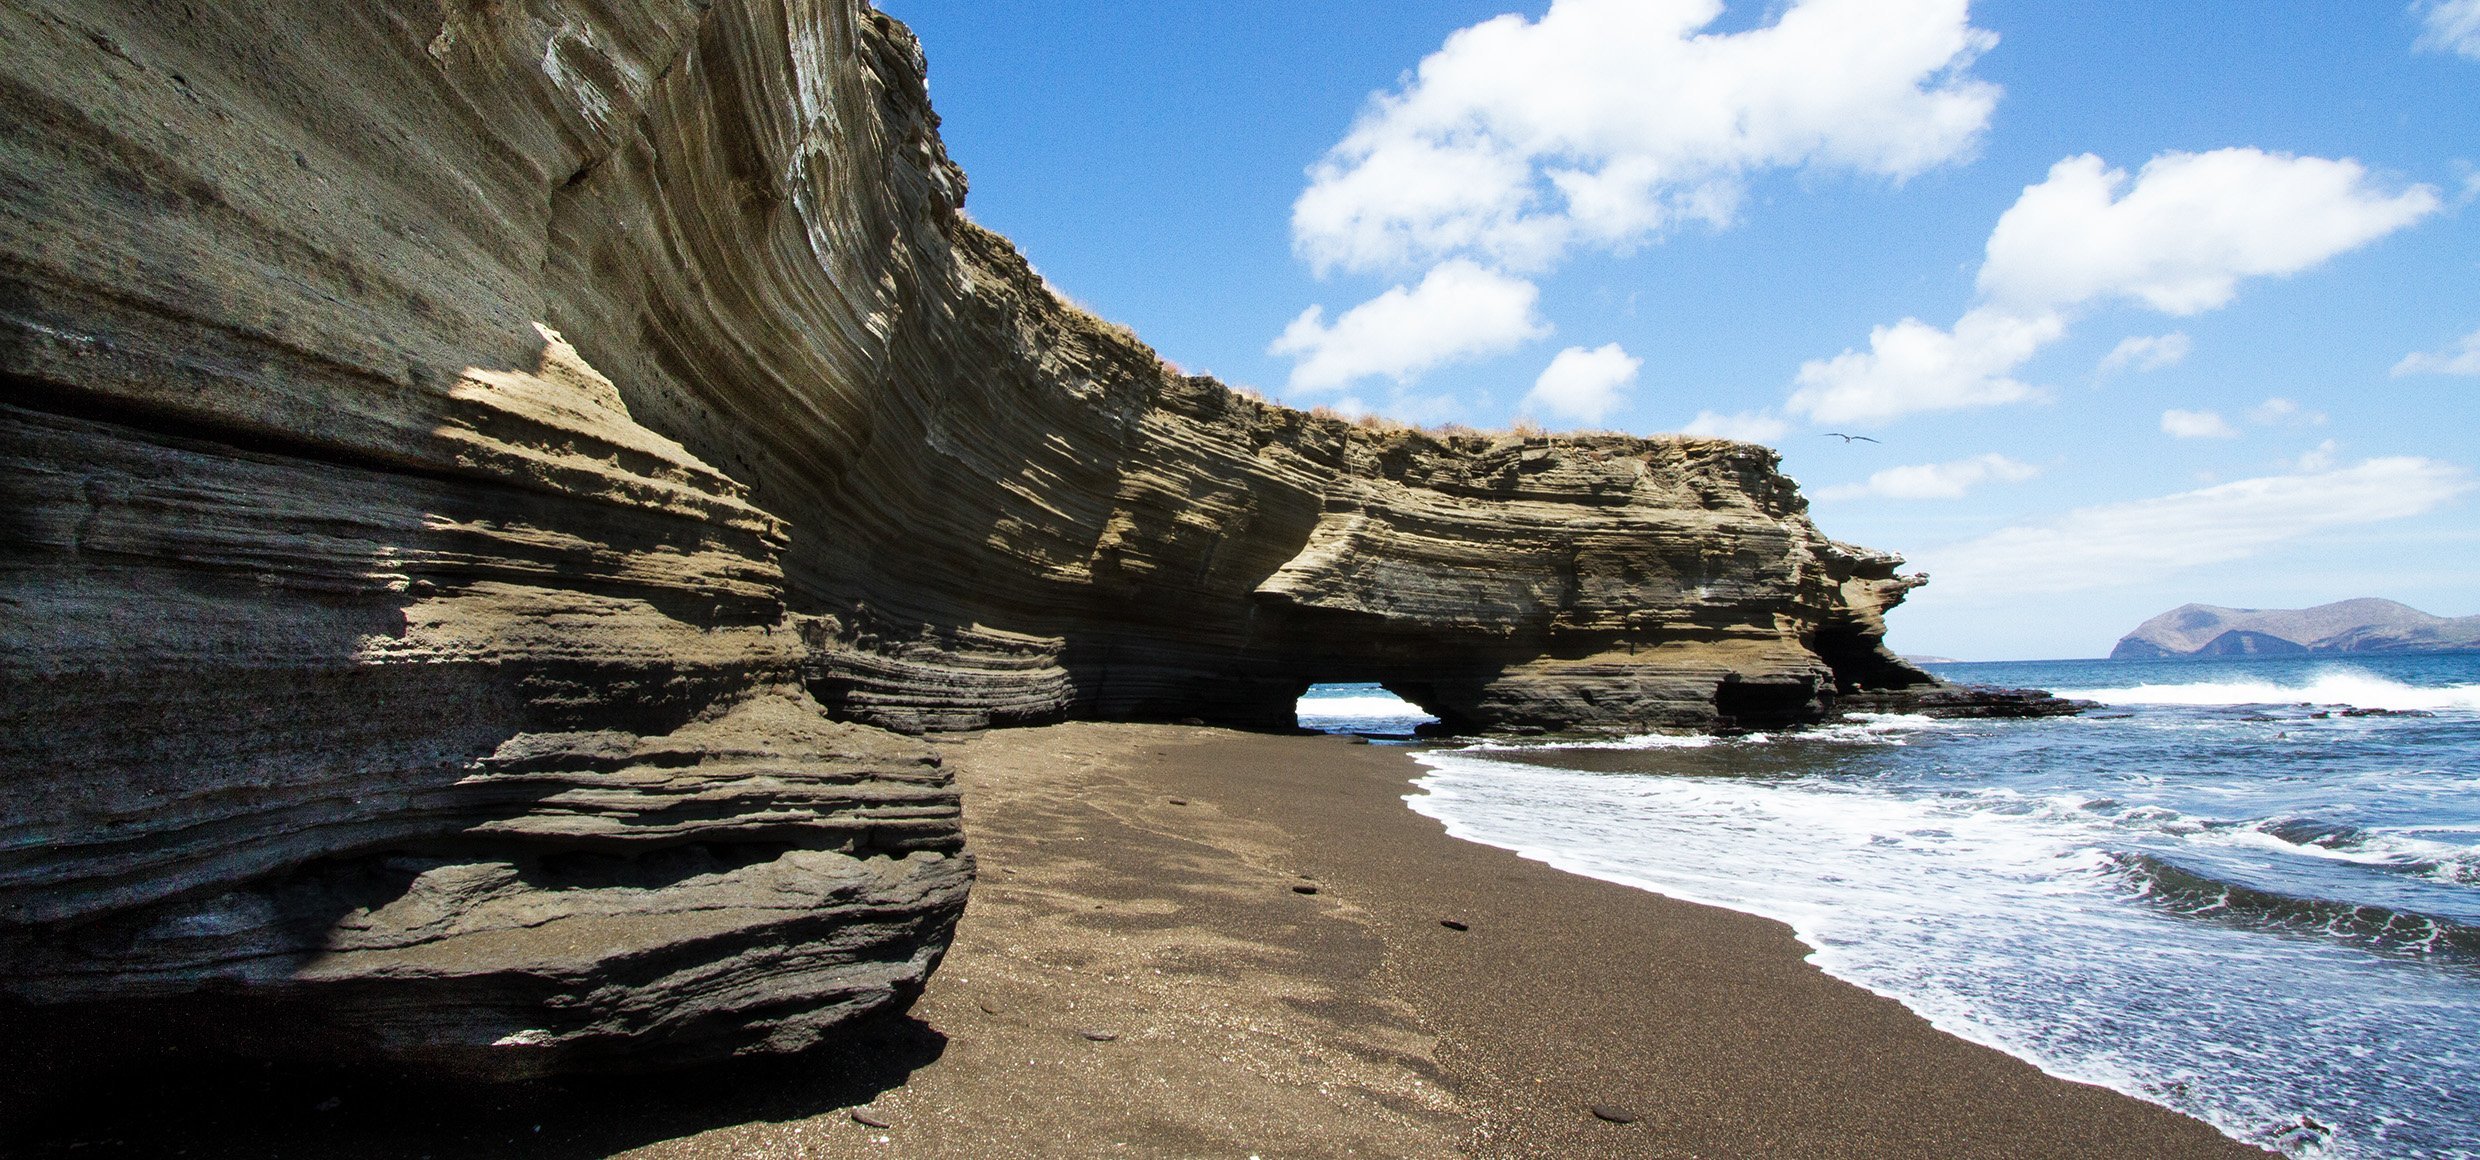 Coastal sandstone cliffs of Santiago Island, Galapagos Islands, Ecuador